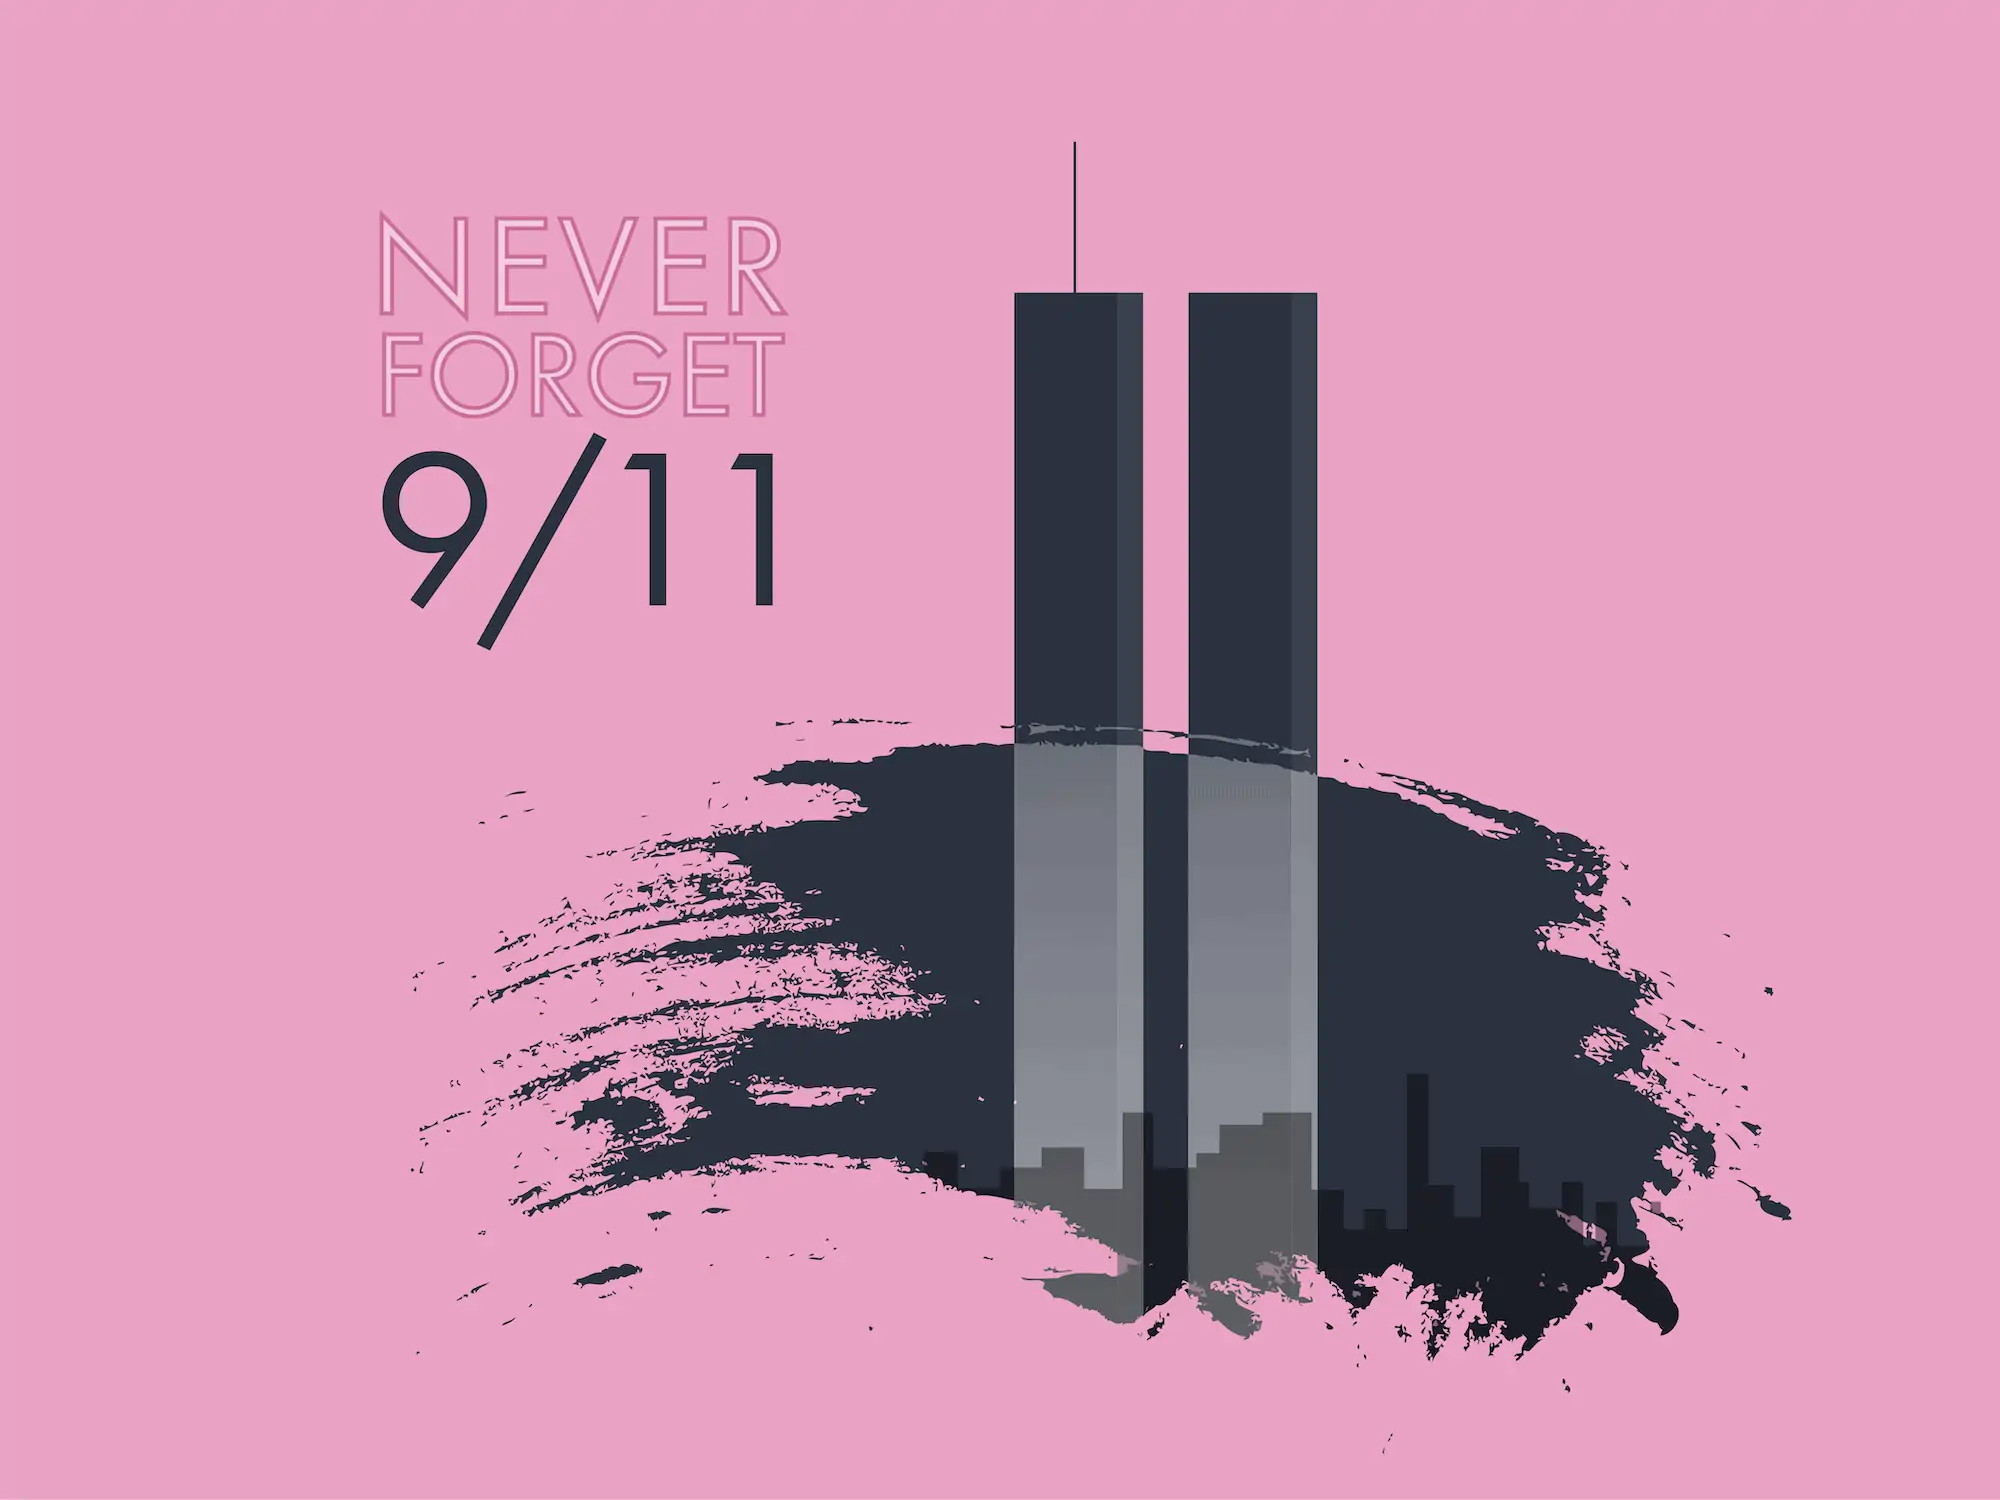 September 11 never forget